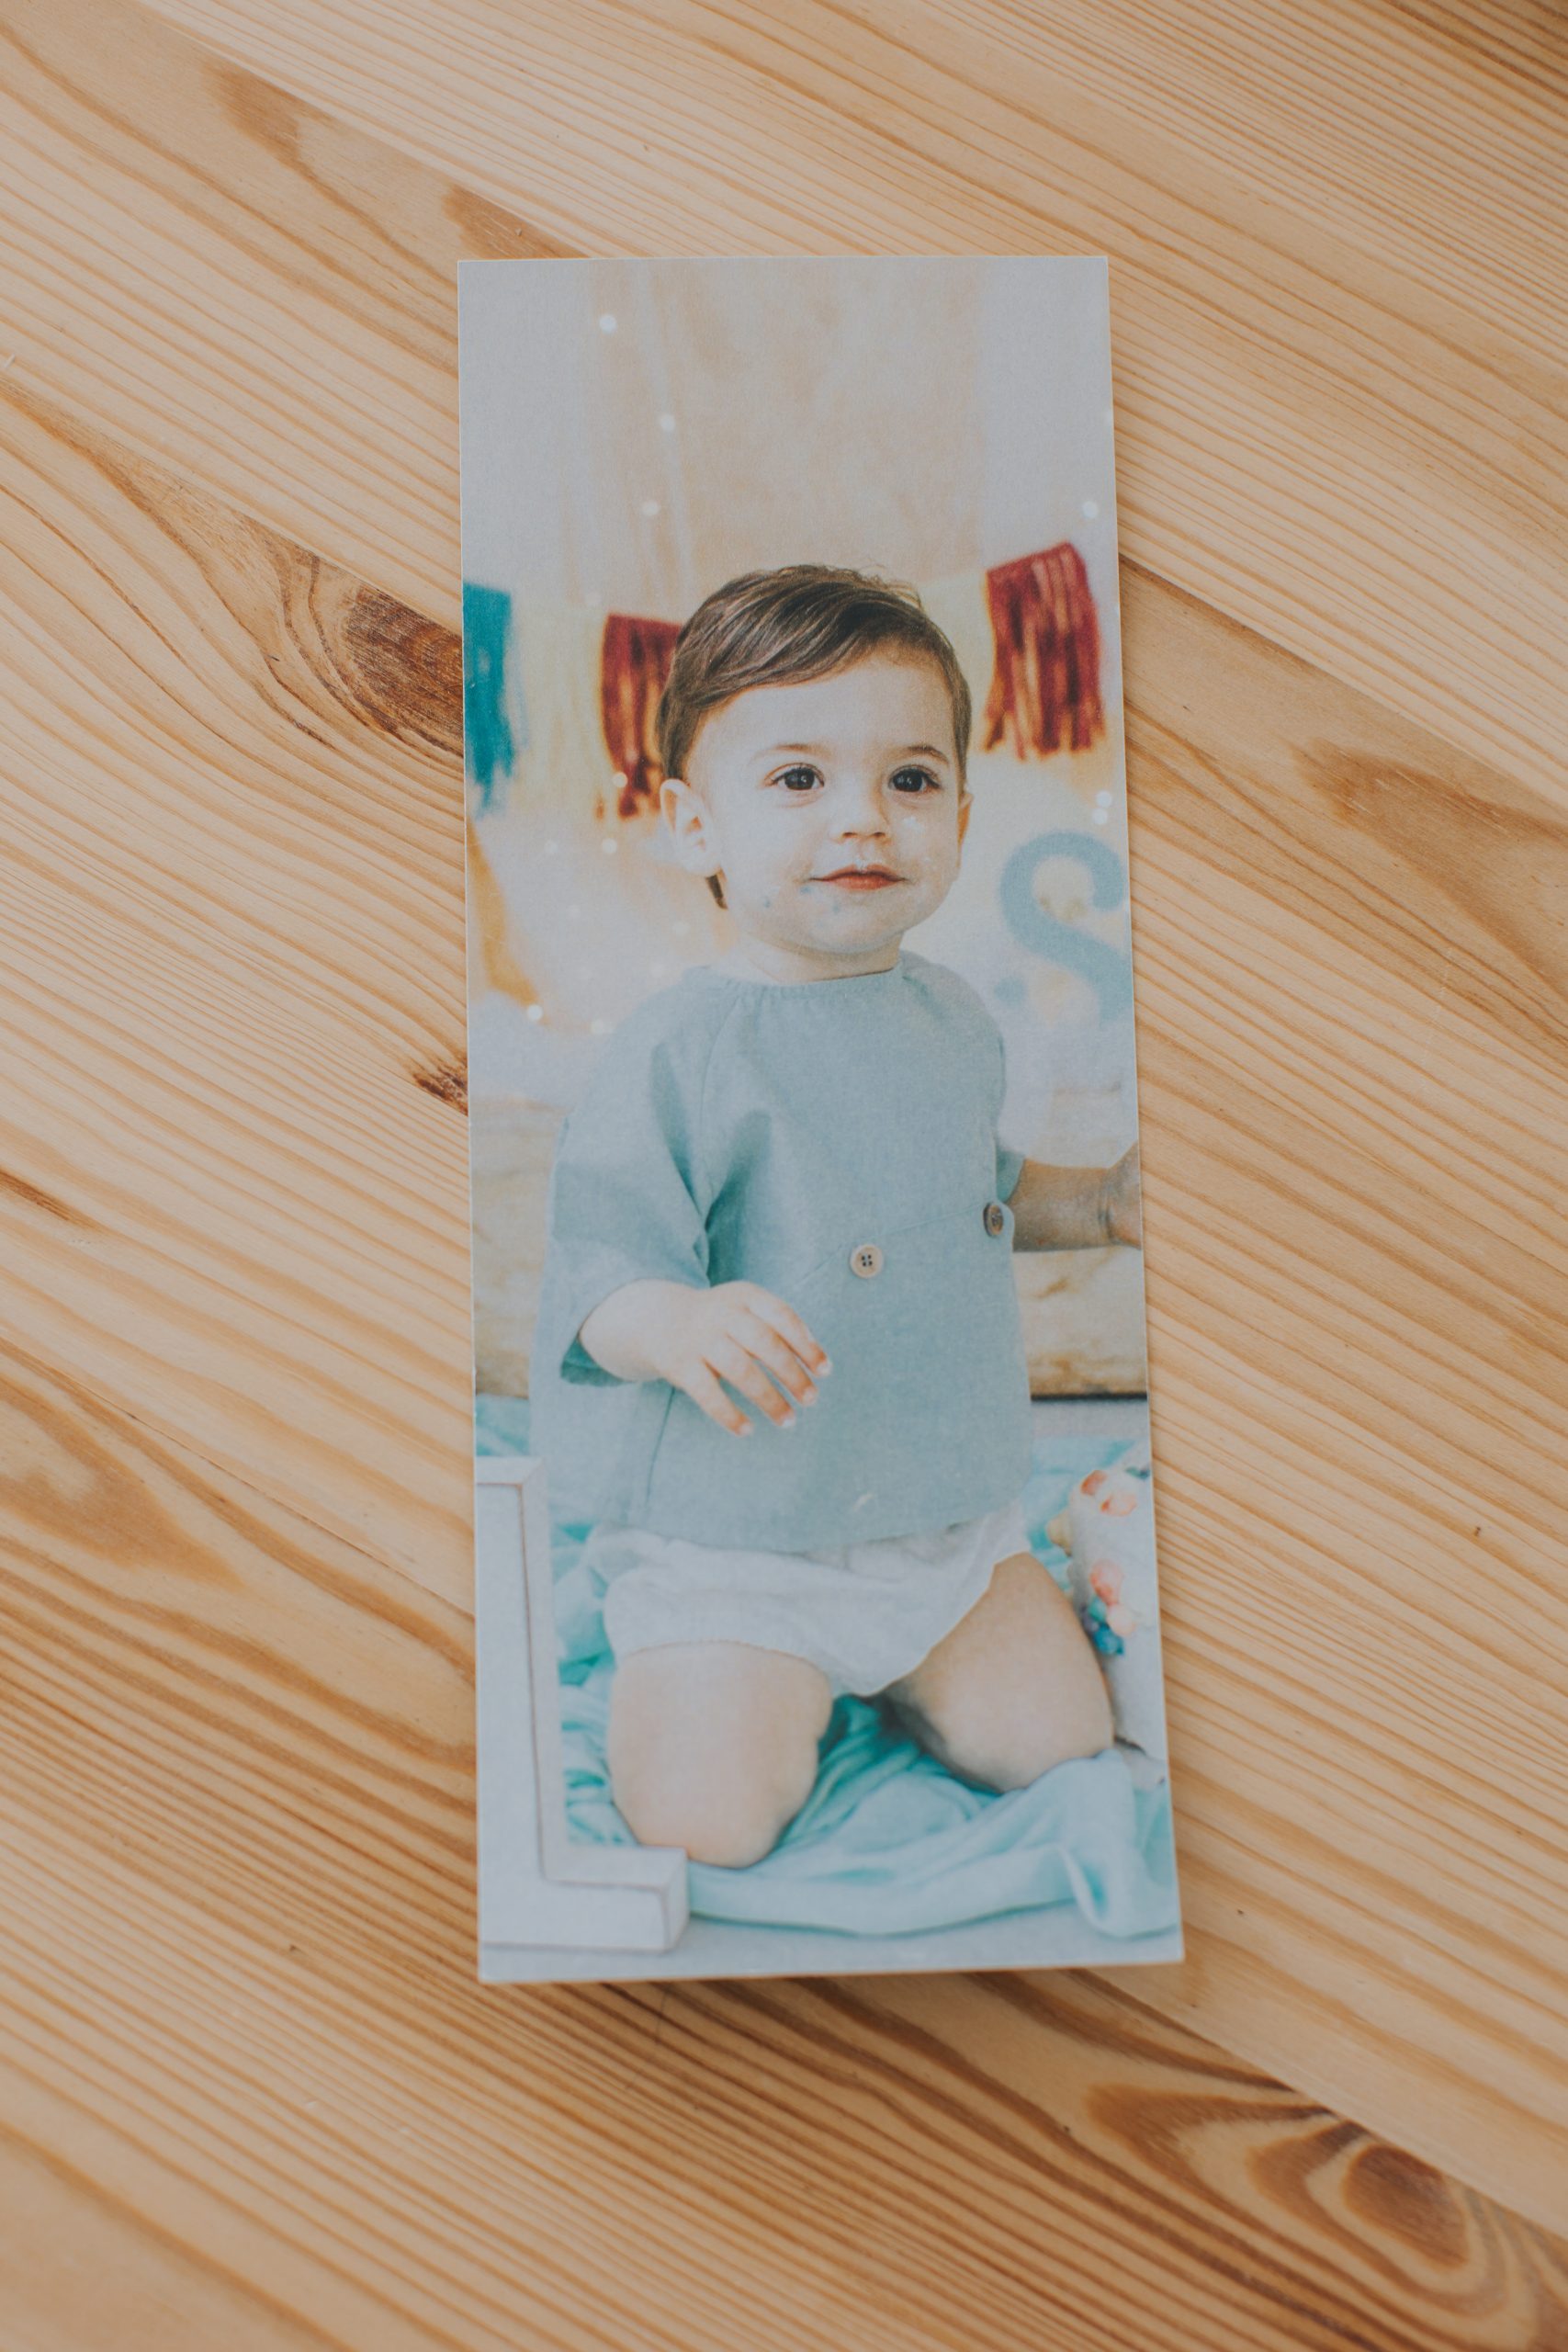 fotografía impresa de un niño en forma rectangular